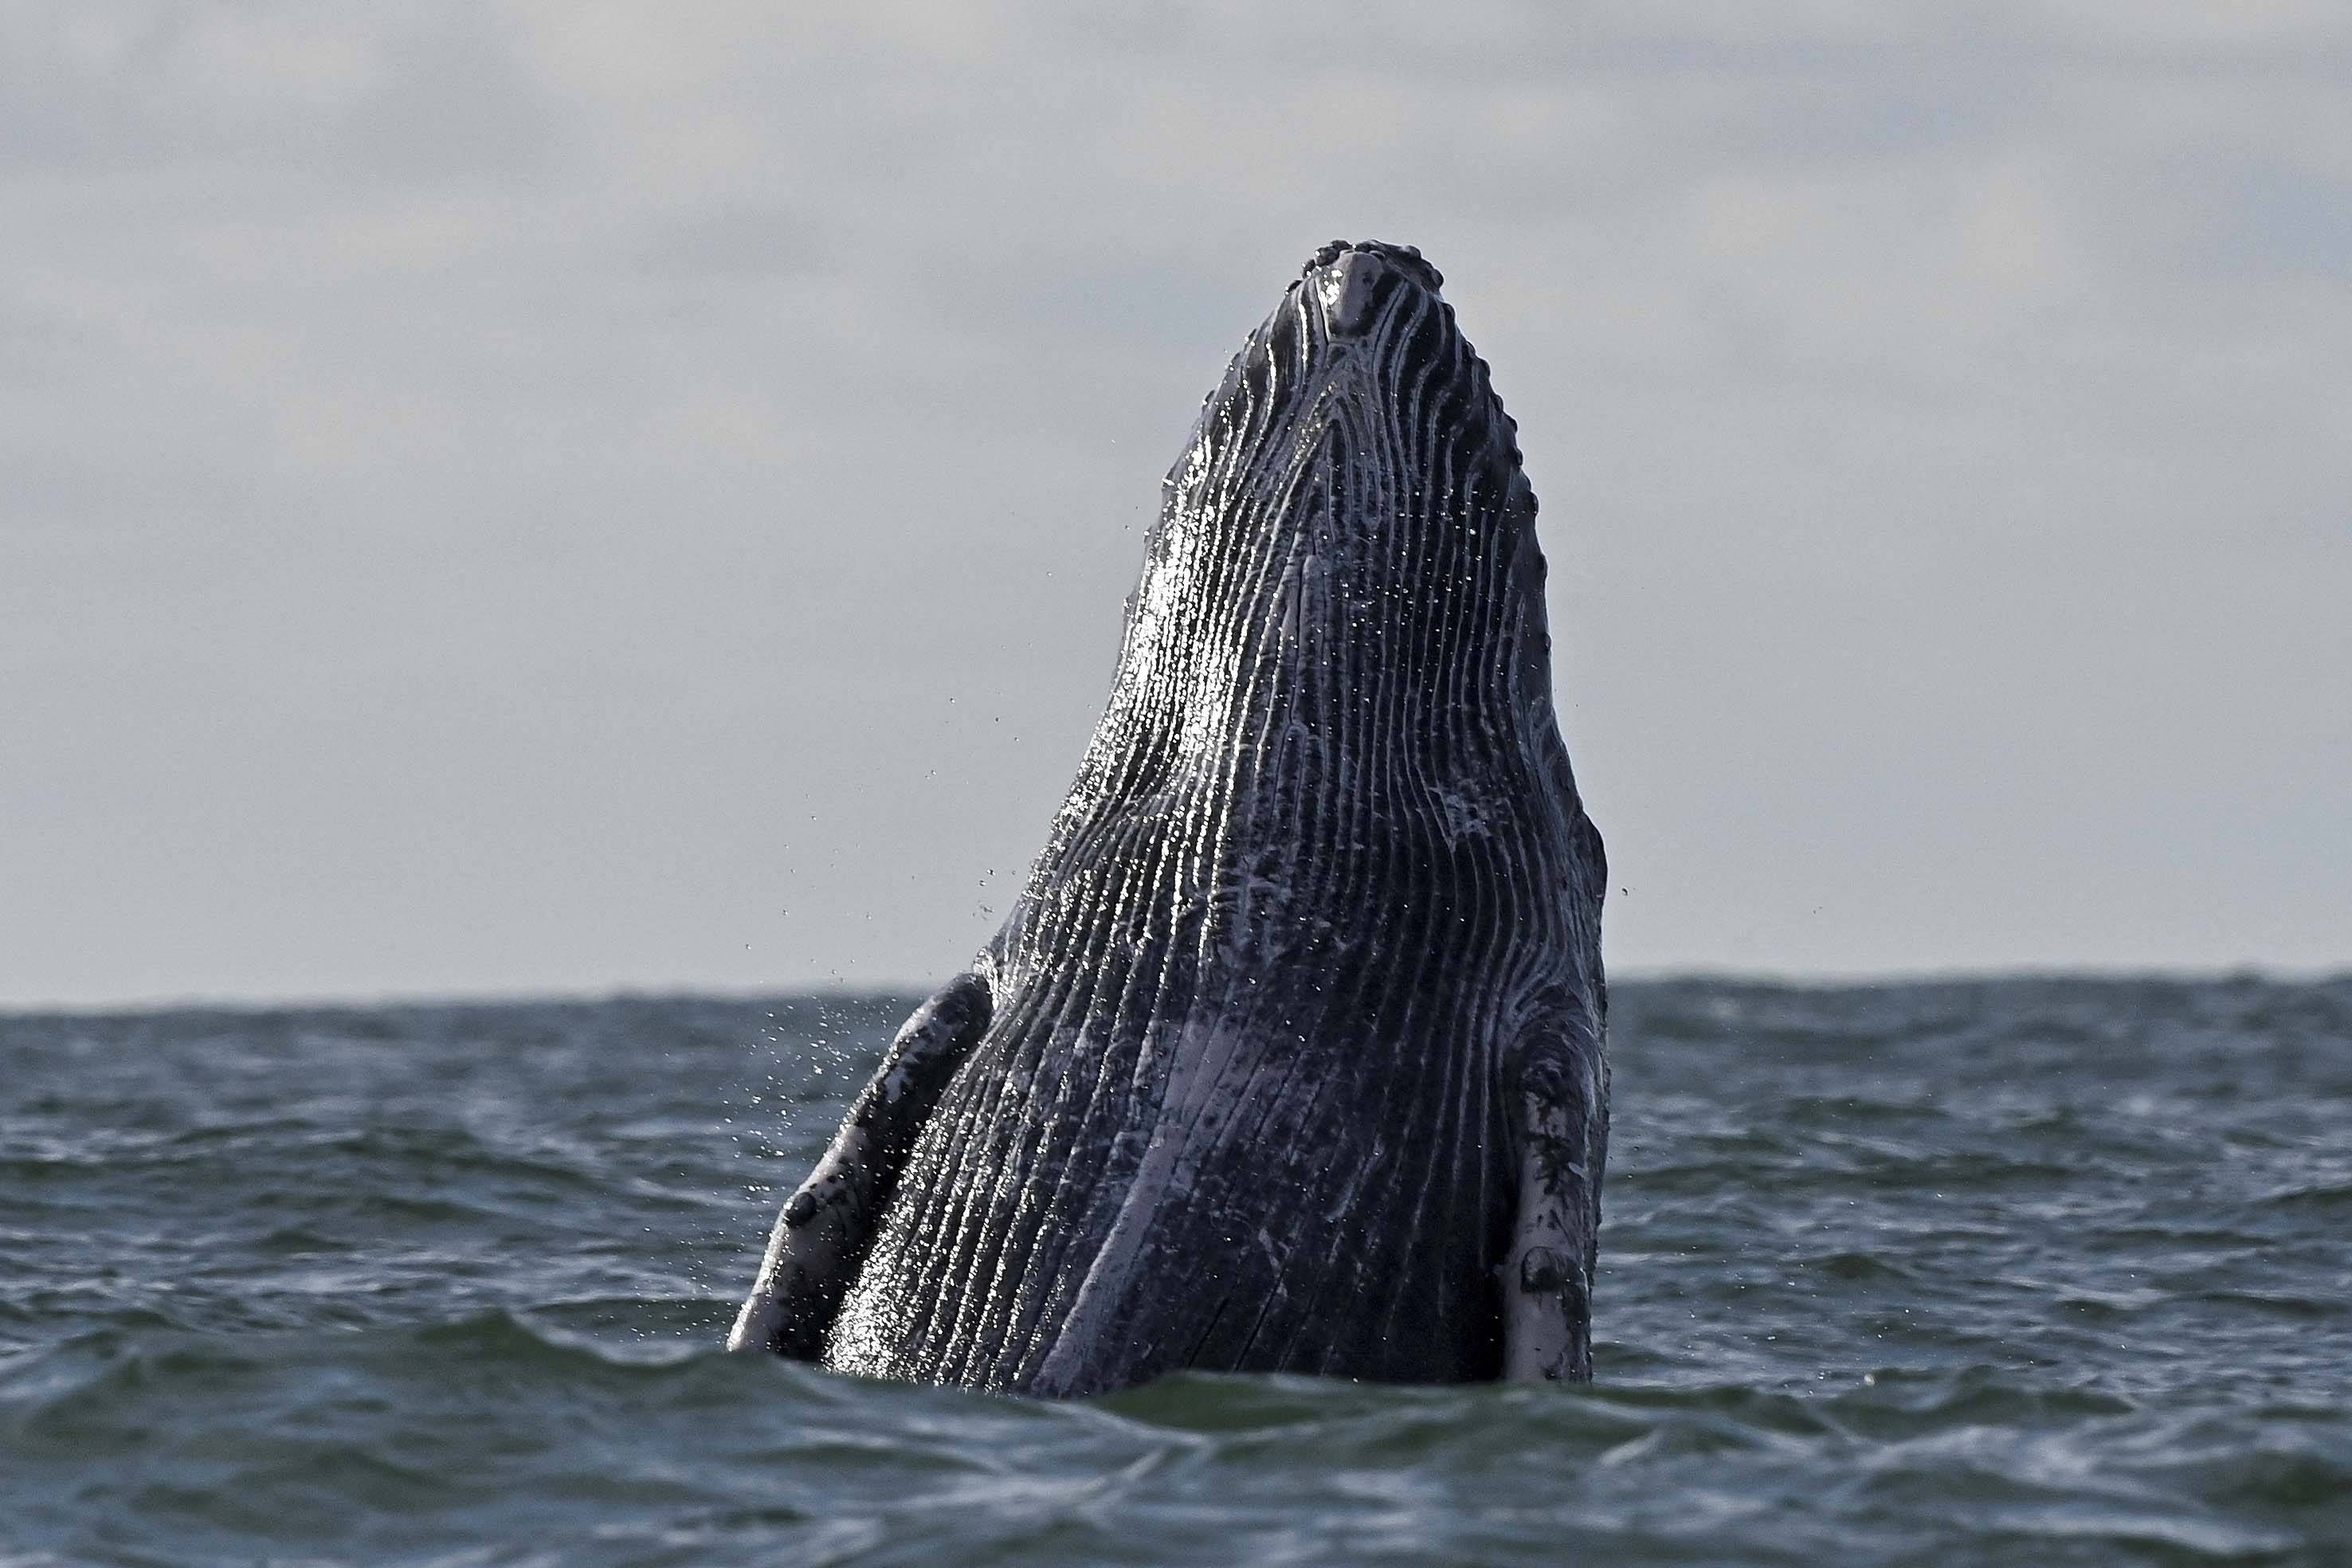 鲸虱座头鲸图片